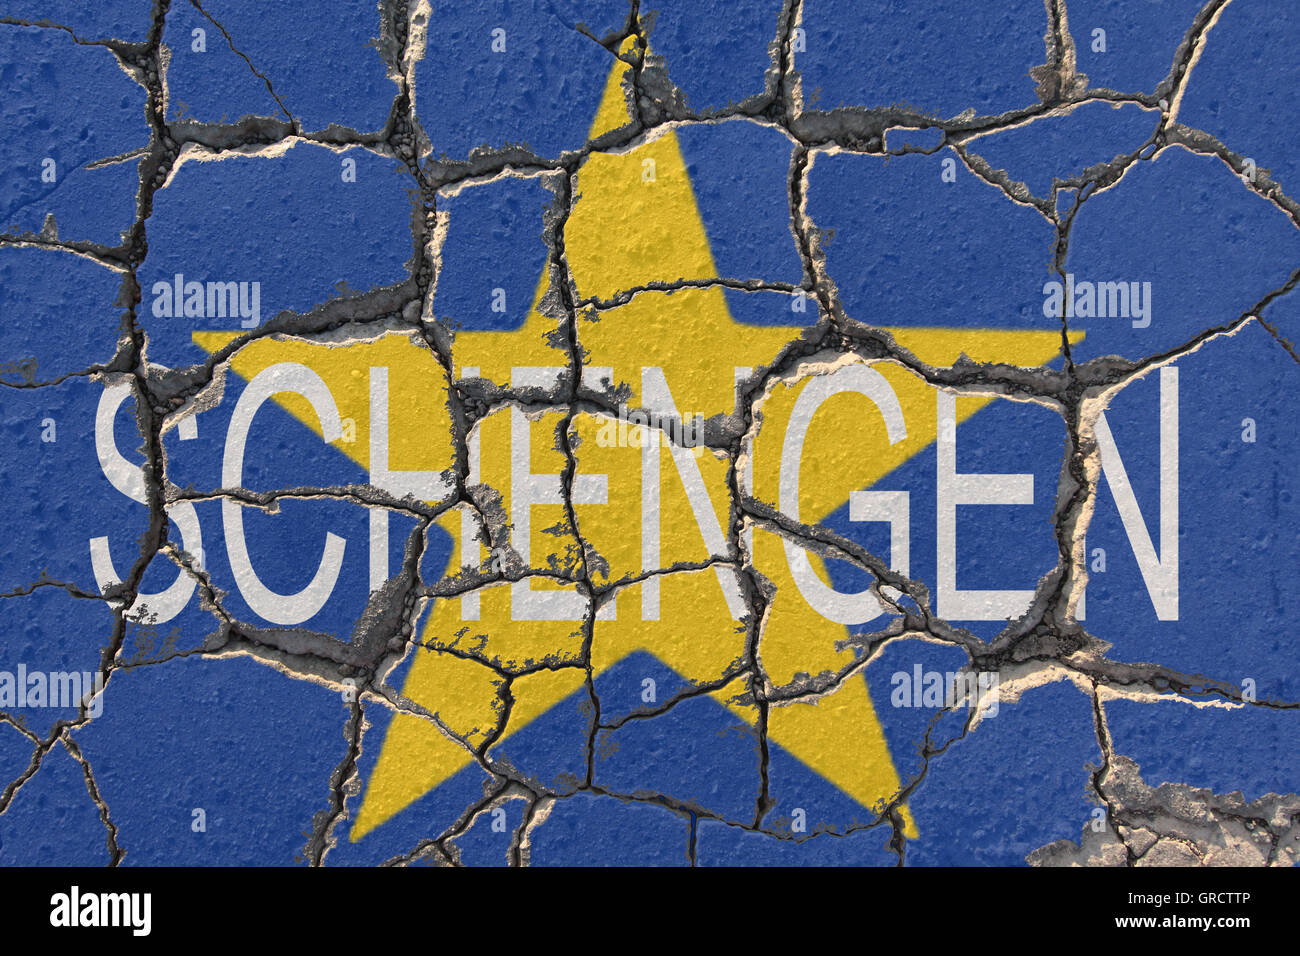 EU-Krise mit erodieren Wort Schengen und EU-Flagge Stockfoto